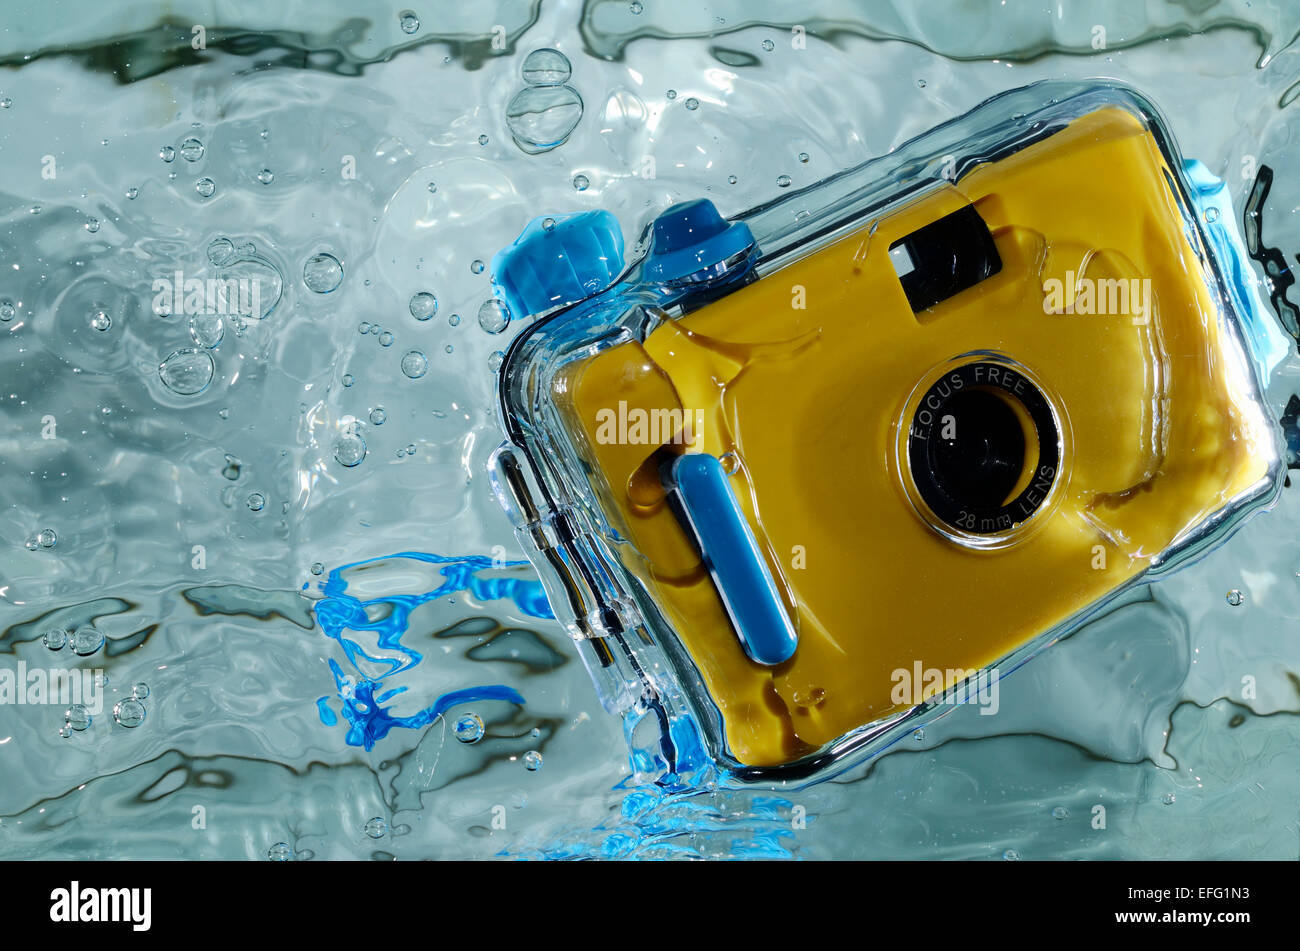 Photo of yellow waterproof camera in water. Stock Photo